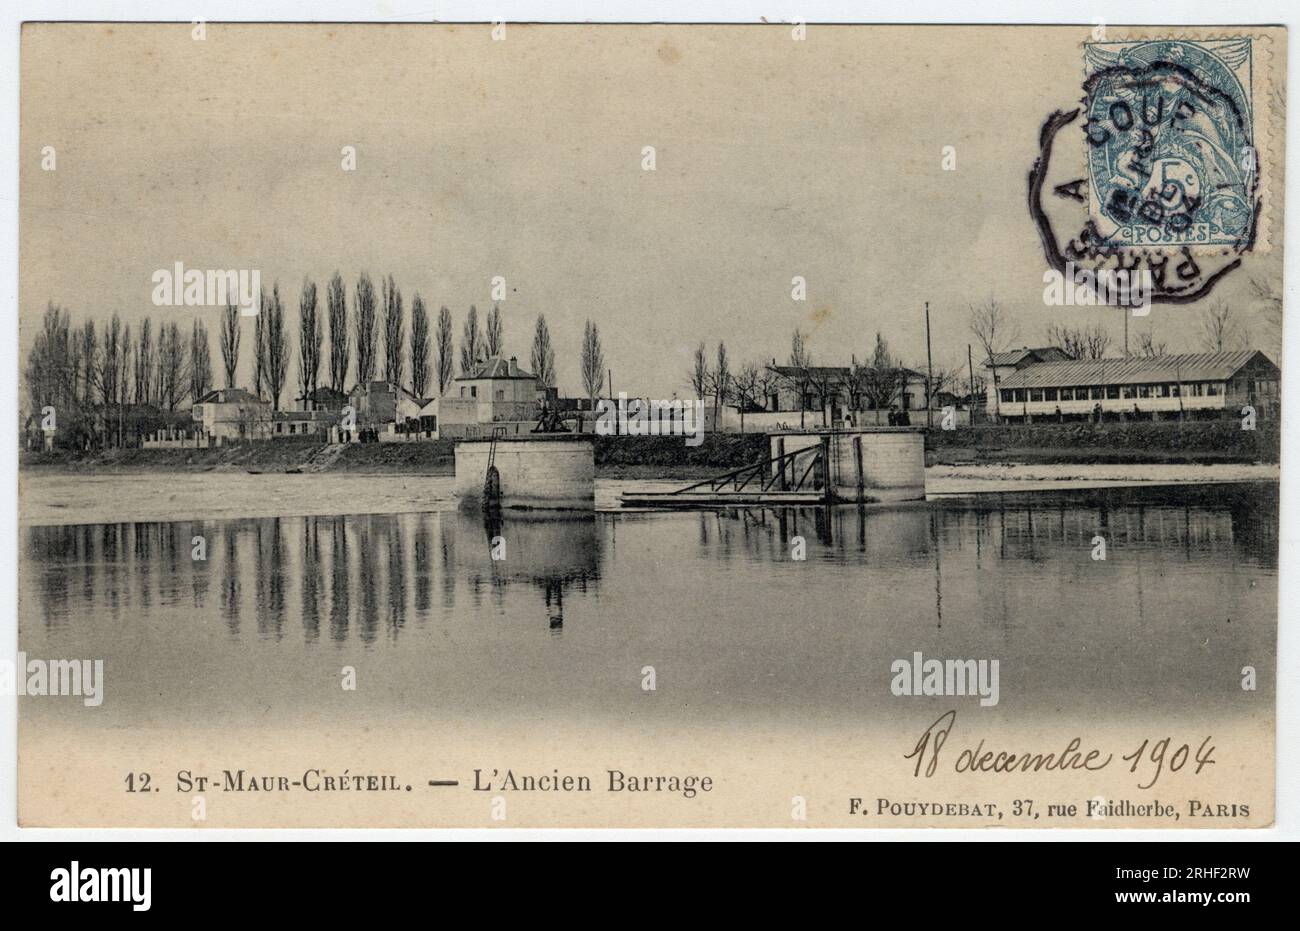 Ile de France, Val de Marne, Creteil : vue de l'ancien barrage sur la Marne - Carte postale datee 1904 Stock Photo